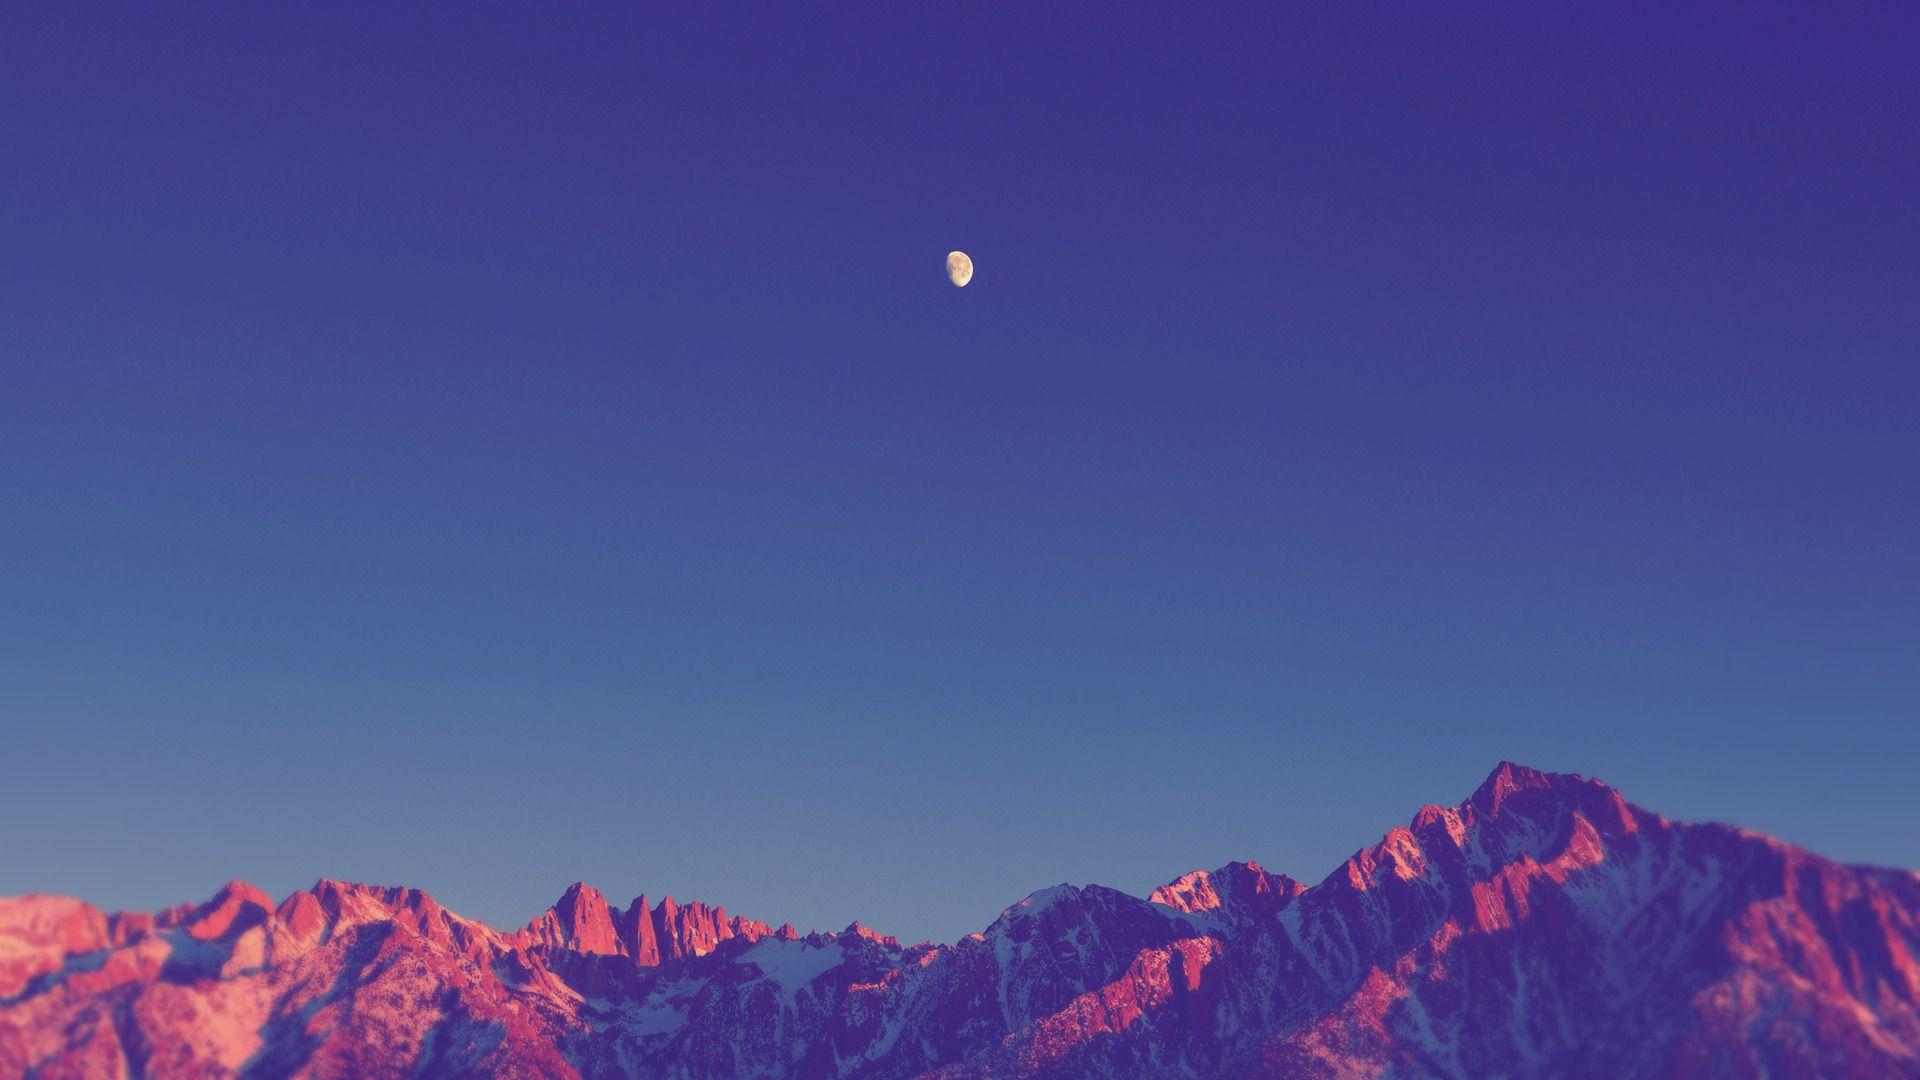 Phong cảnh 1920x1080, Đơn giản, Thiên nhiên, Mặt trăng, Bóng tối, Núi, Đỉnh tuyết, Bầu trời